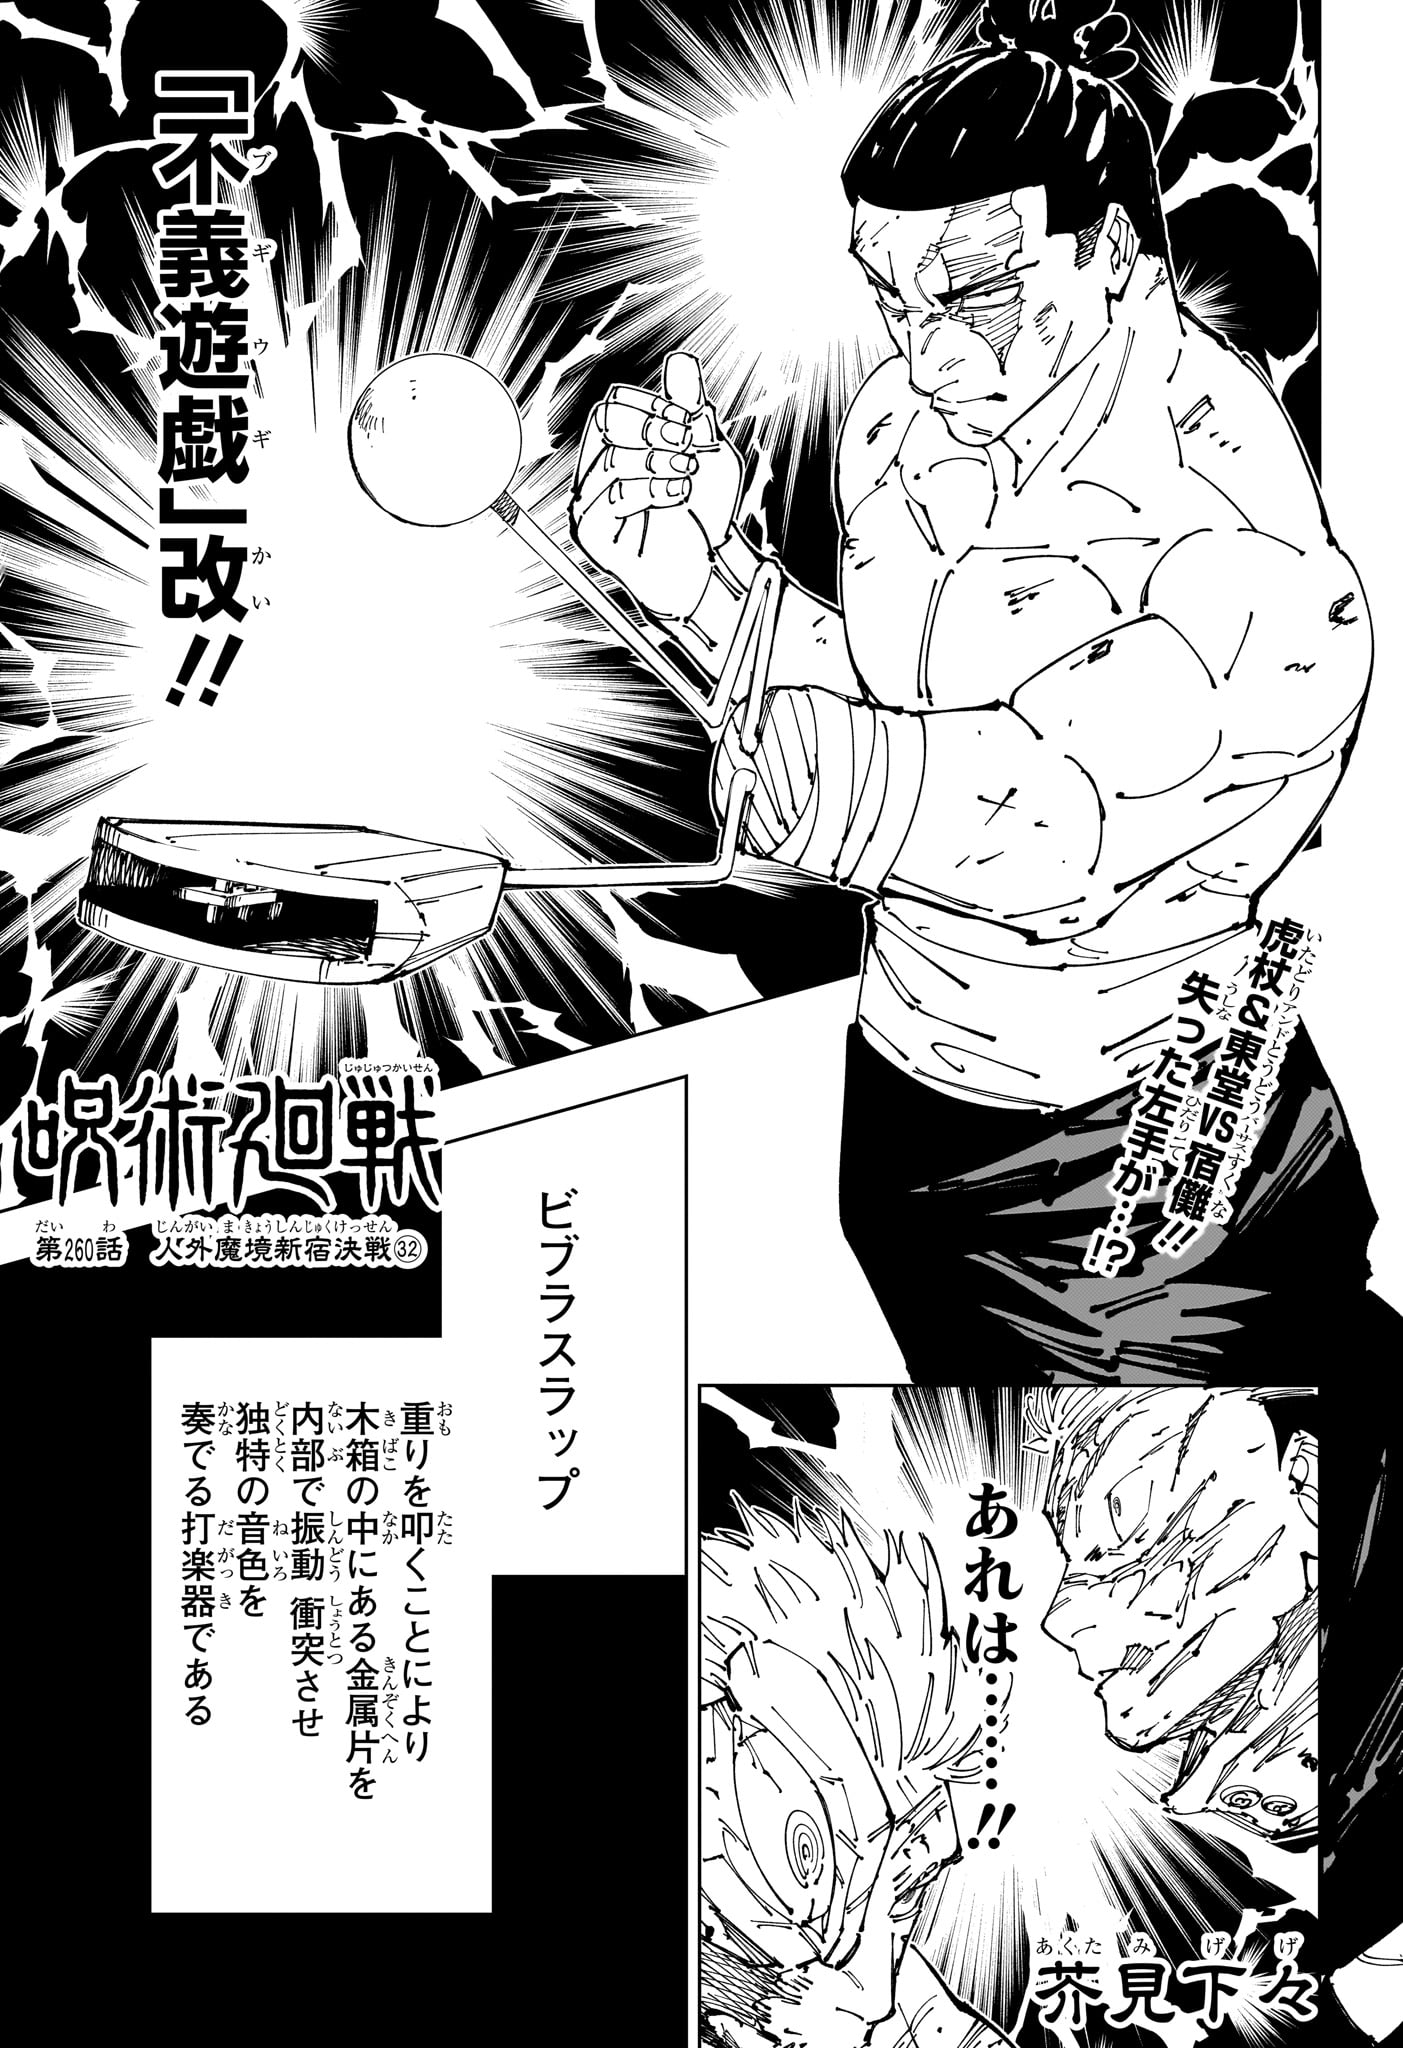 Jujutsu Kaisen - Chapter 260 - Page 1